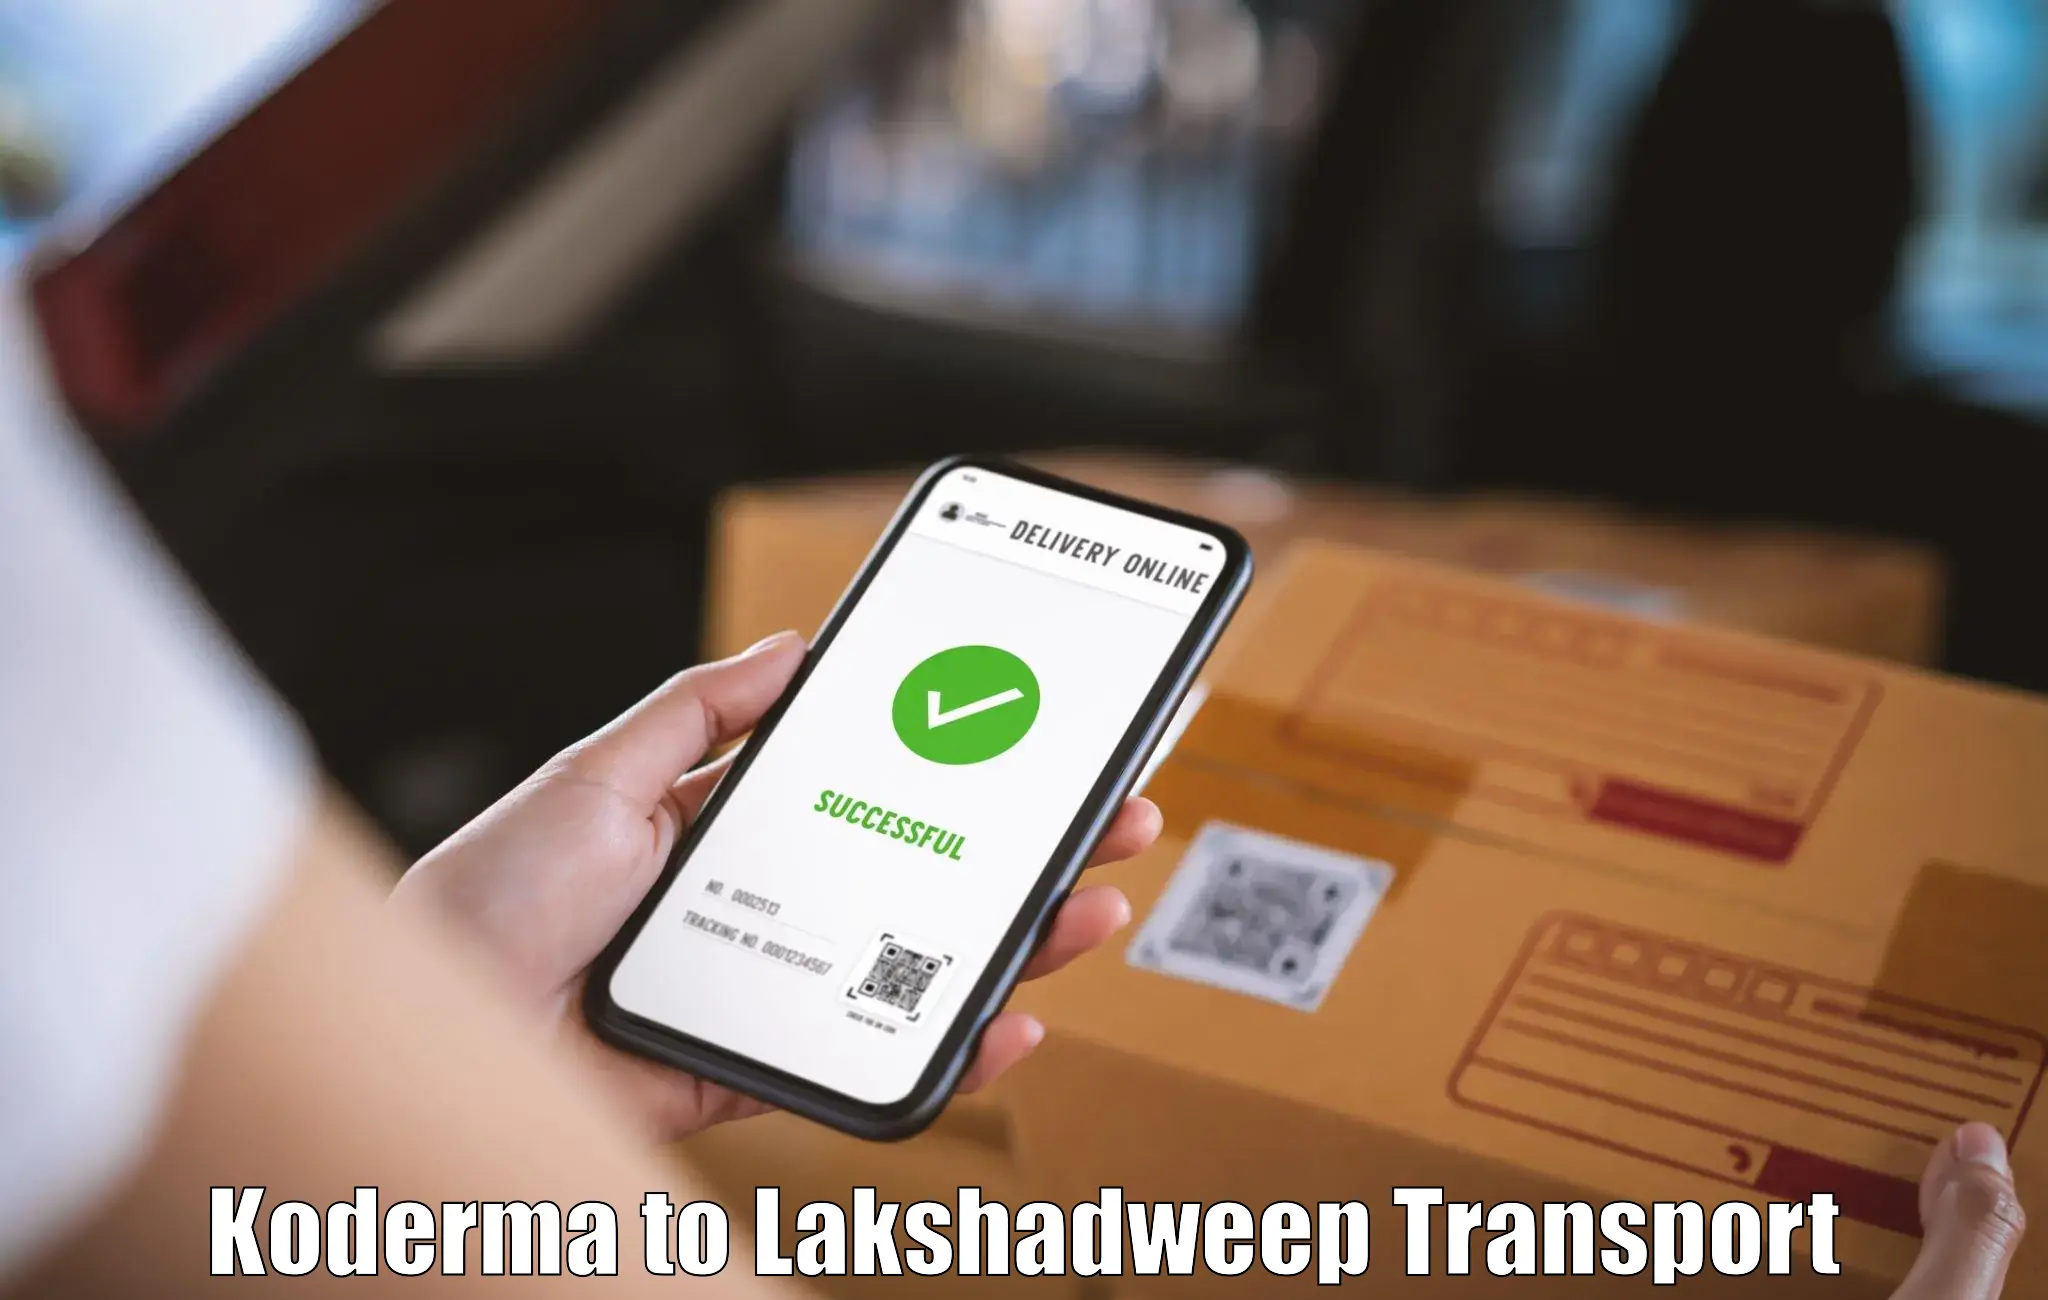 Shipping partner Koderma to Lakshadweep